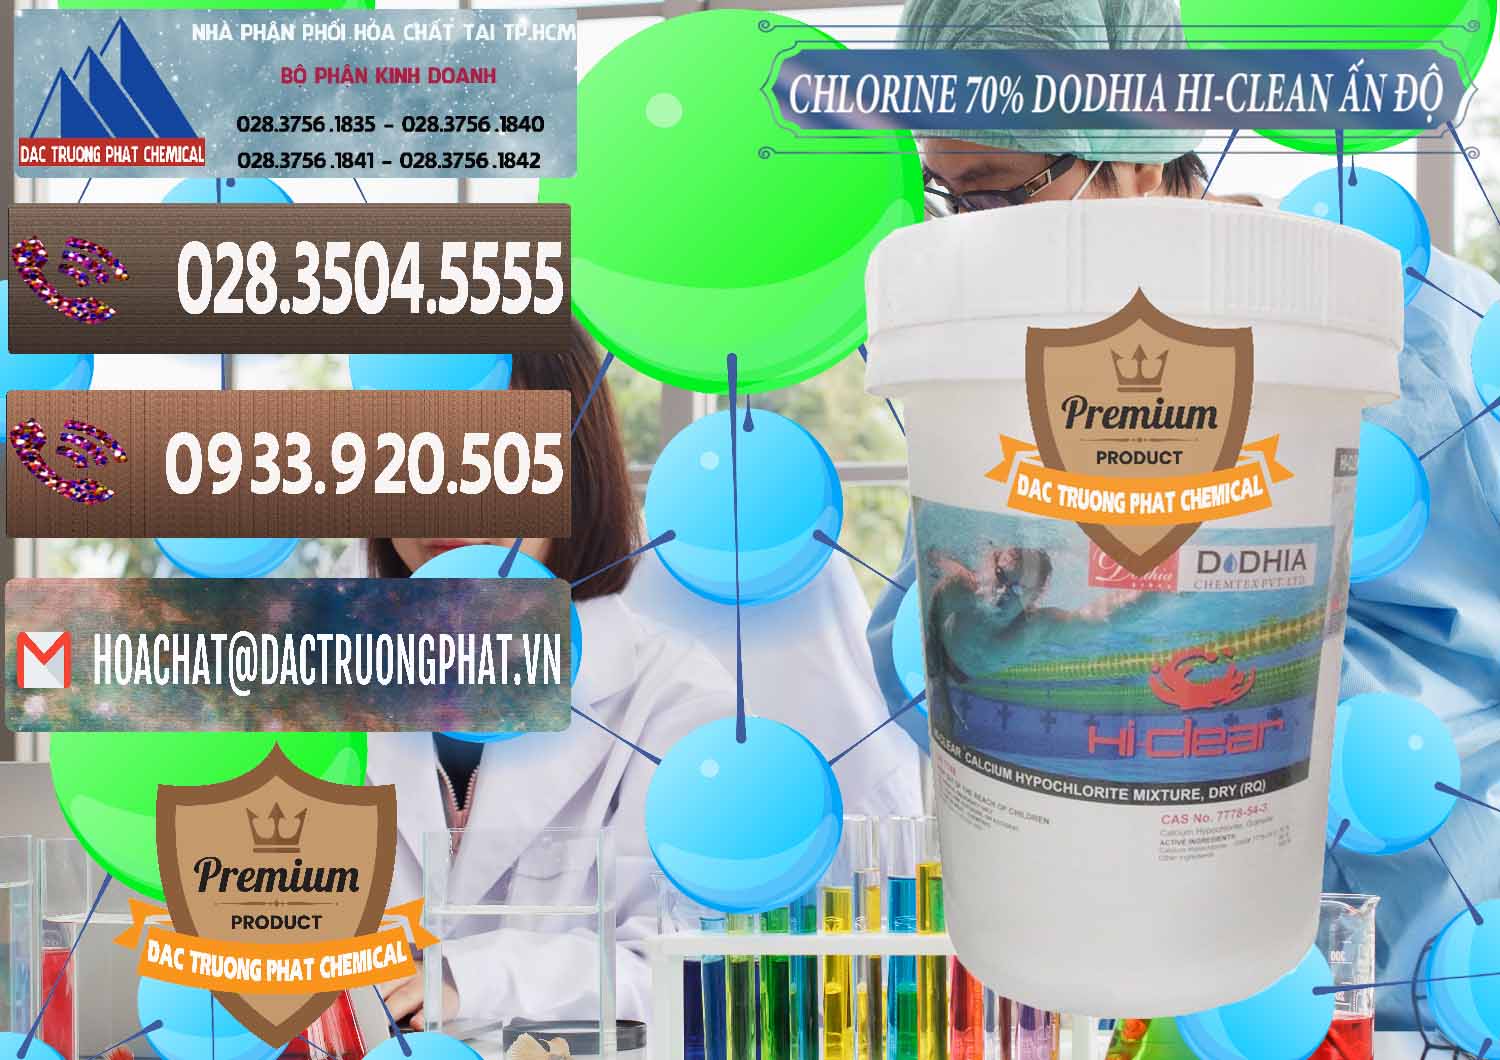 Nơi chuyên cung cấp & bán Chlorine – Clorin 70% Dodhia Hi-Clean Ấn Độ India - 0214 - Nơi nhập khẩu & phân phối hóa chất tại TP.HCM - hoachatviet.net